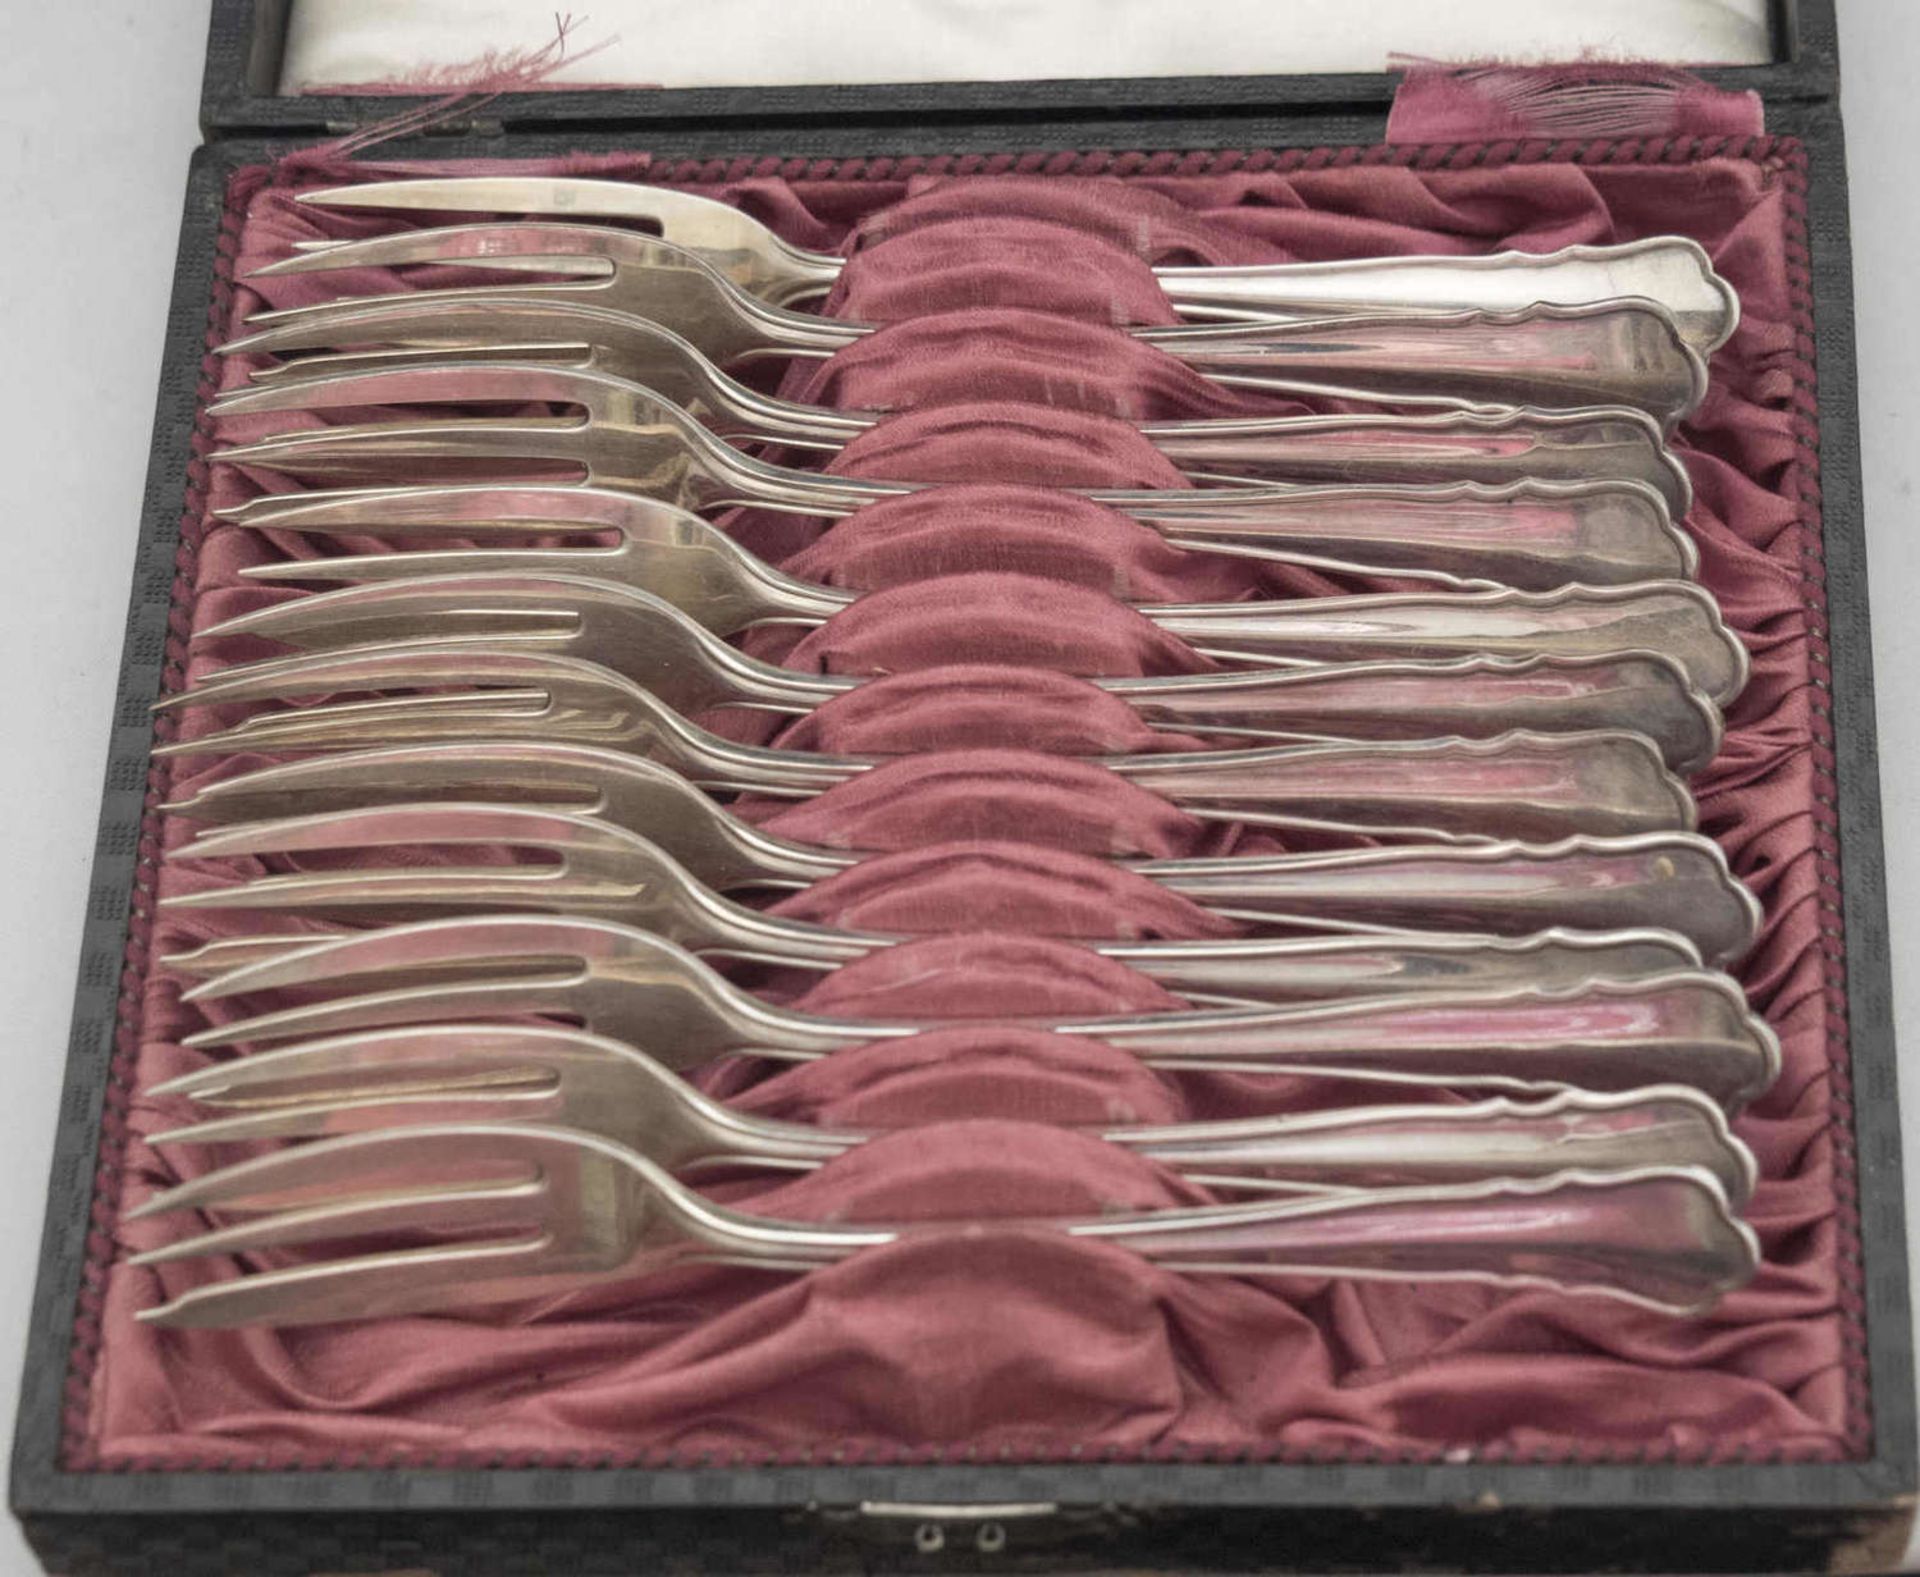 12 Kuchengabeln, 800er Silber gepunzt. Im Originalkasten. Gewicht ca. 348 gr12 cake forks, 800